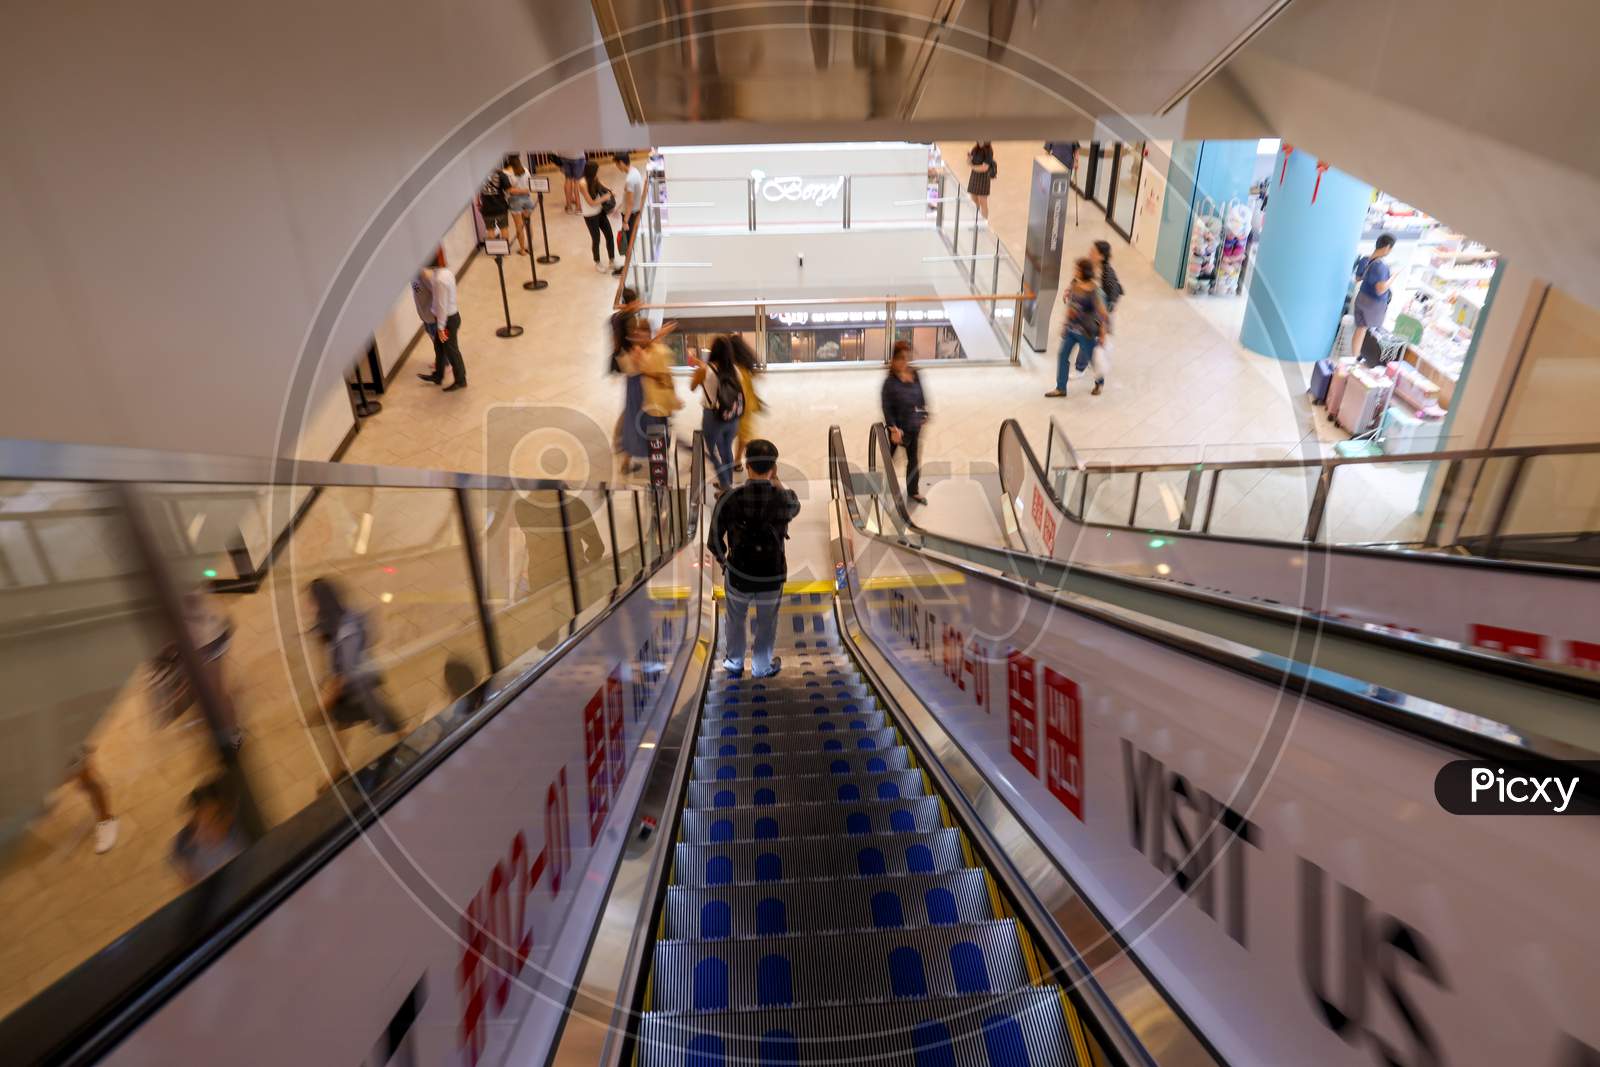 Escalator in Singapore.